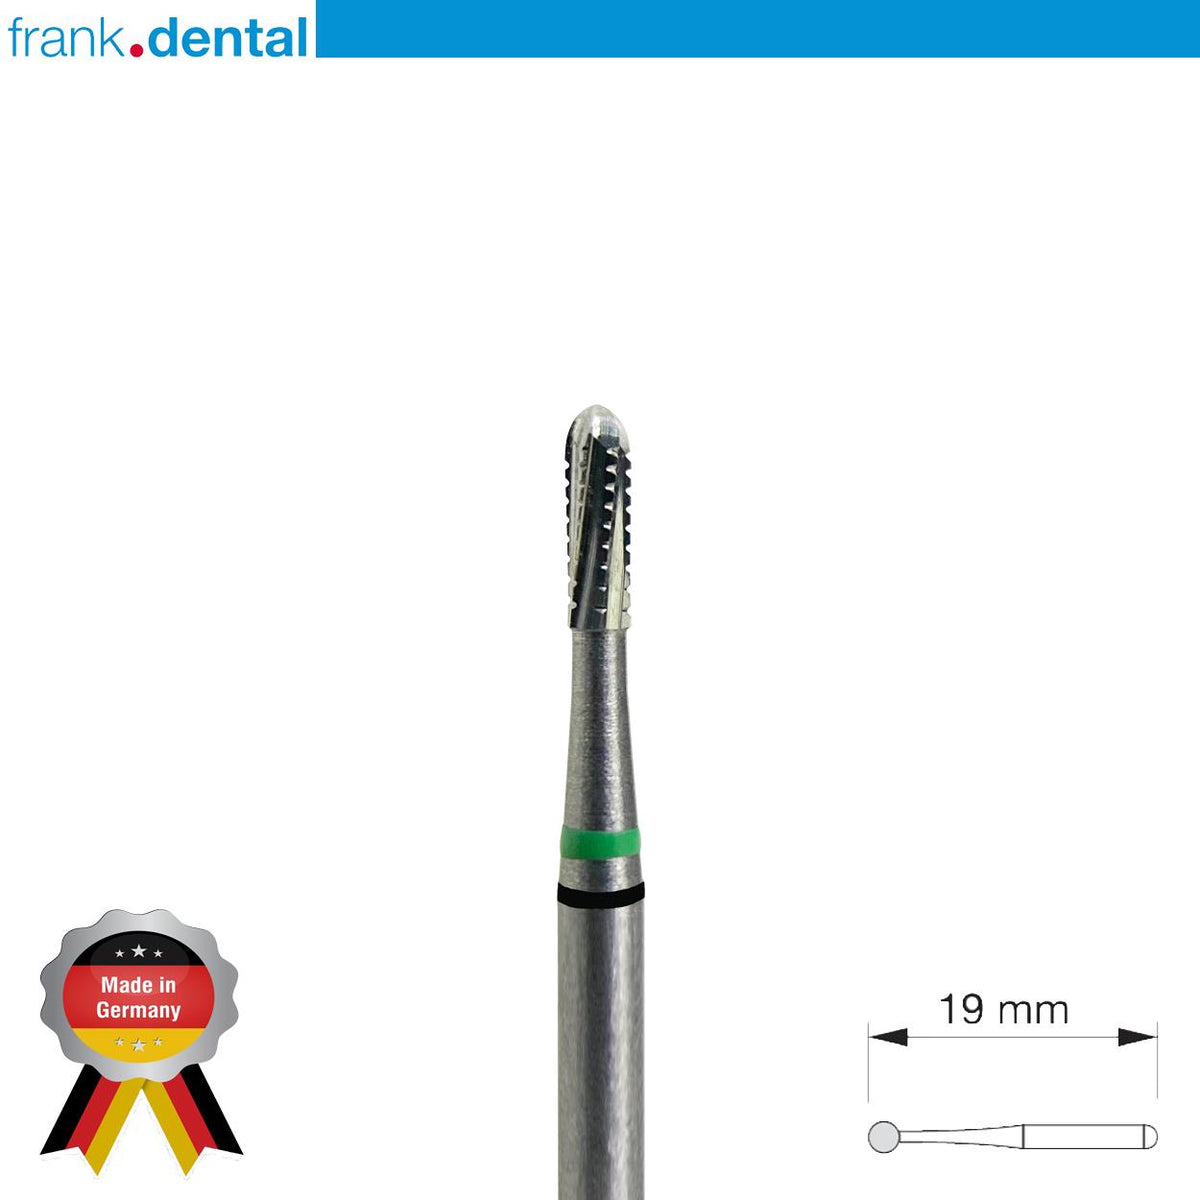 DentrealStore - Frank Dental Cutter Beast 2 Carpide Metal&Crown Cutting - 10 Pcs